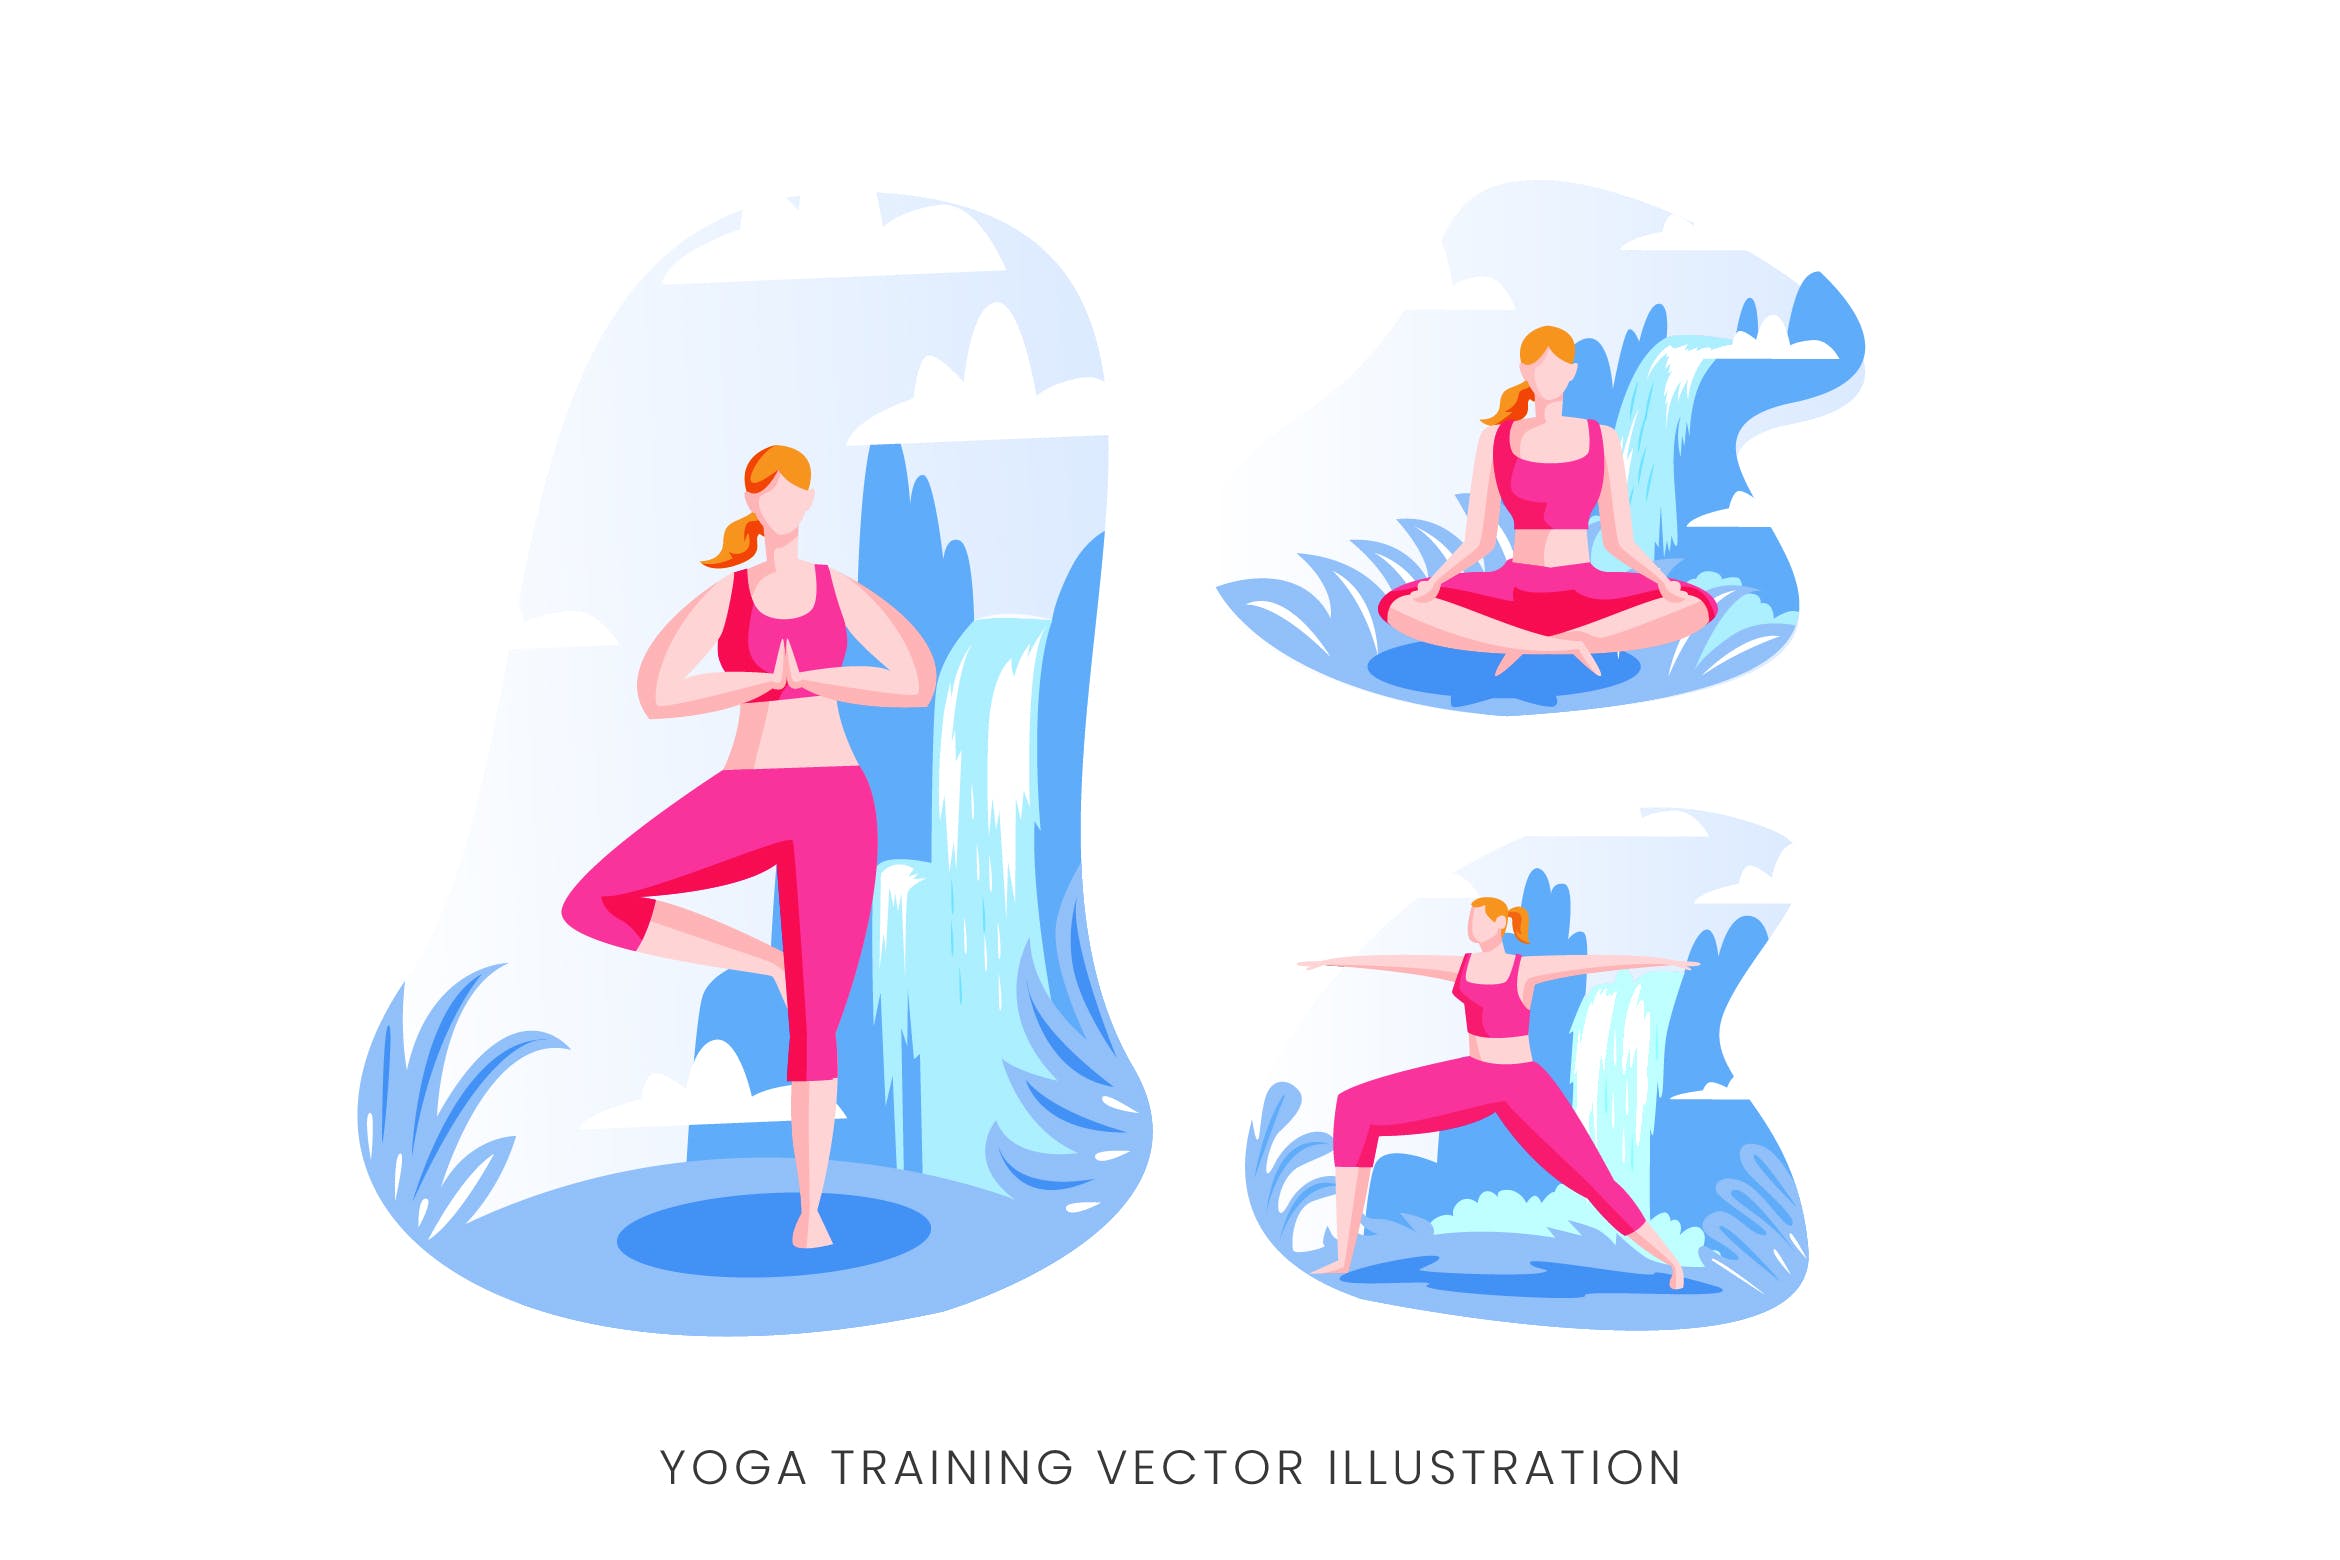 瑜伽训练人物形象矢量手绘素材库精选设计素材 Yoga Training Vector Character Set插图